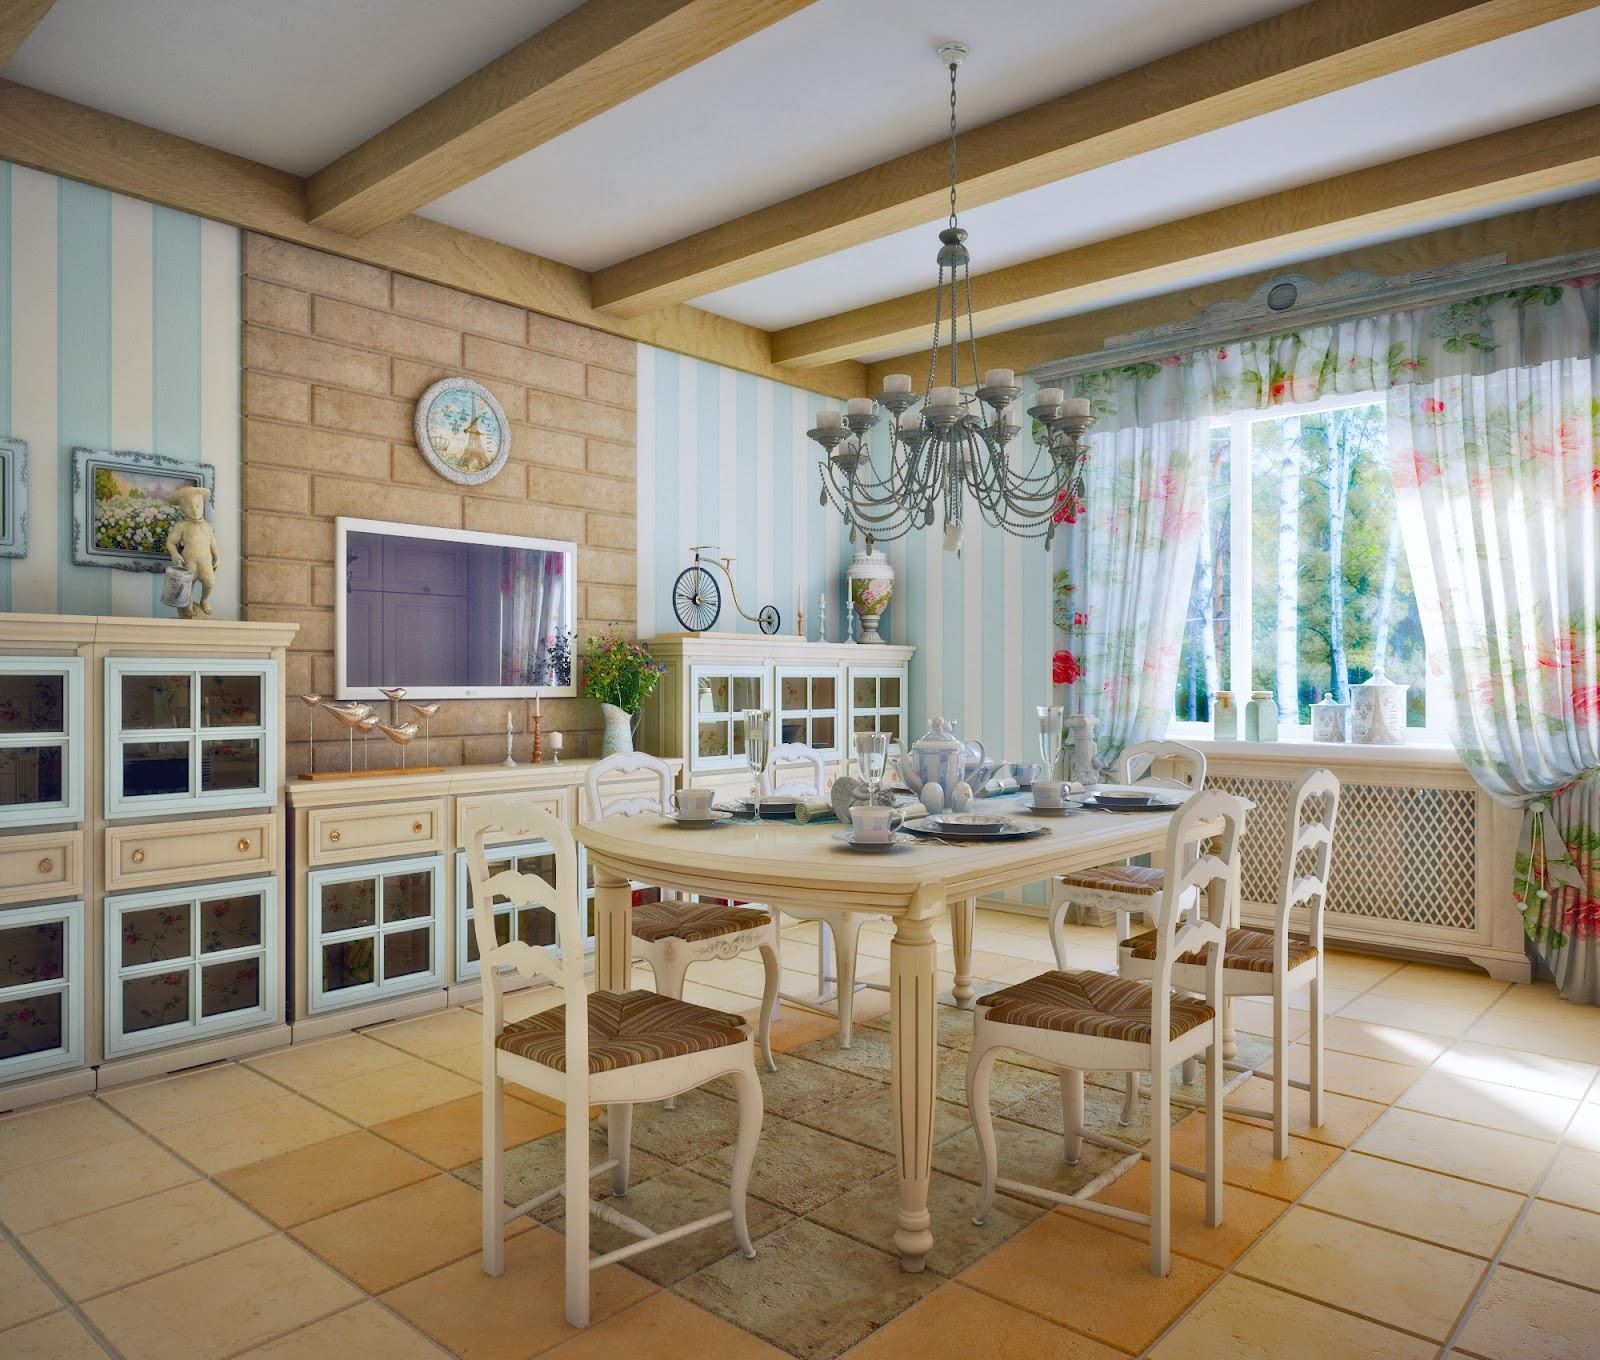 Кухонный интерьер в стиле прованс